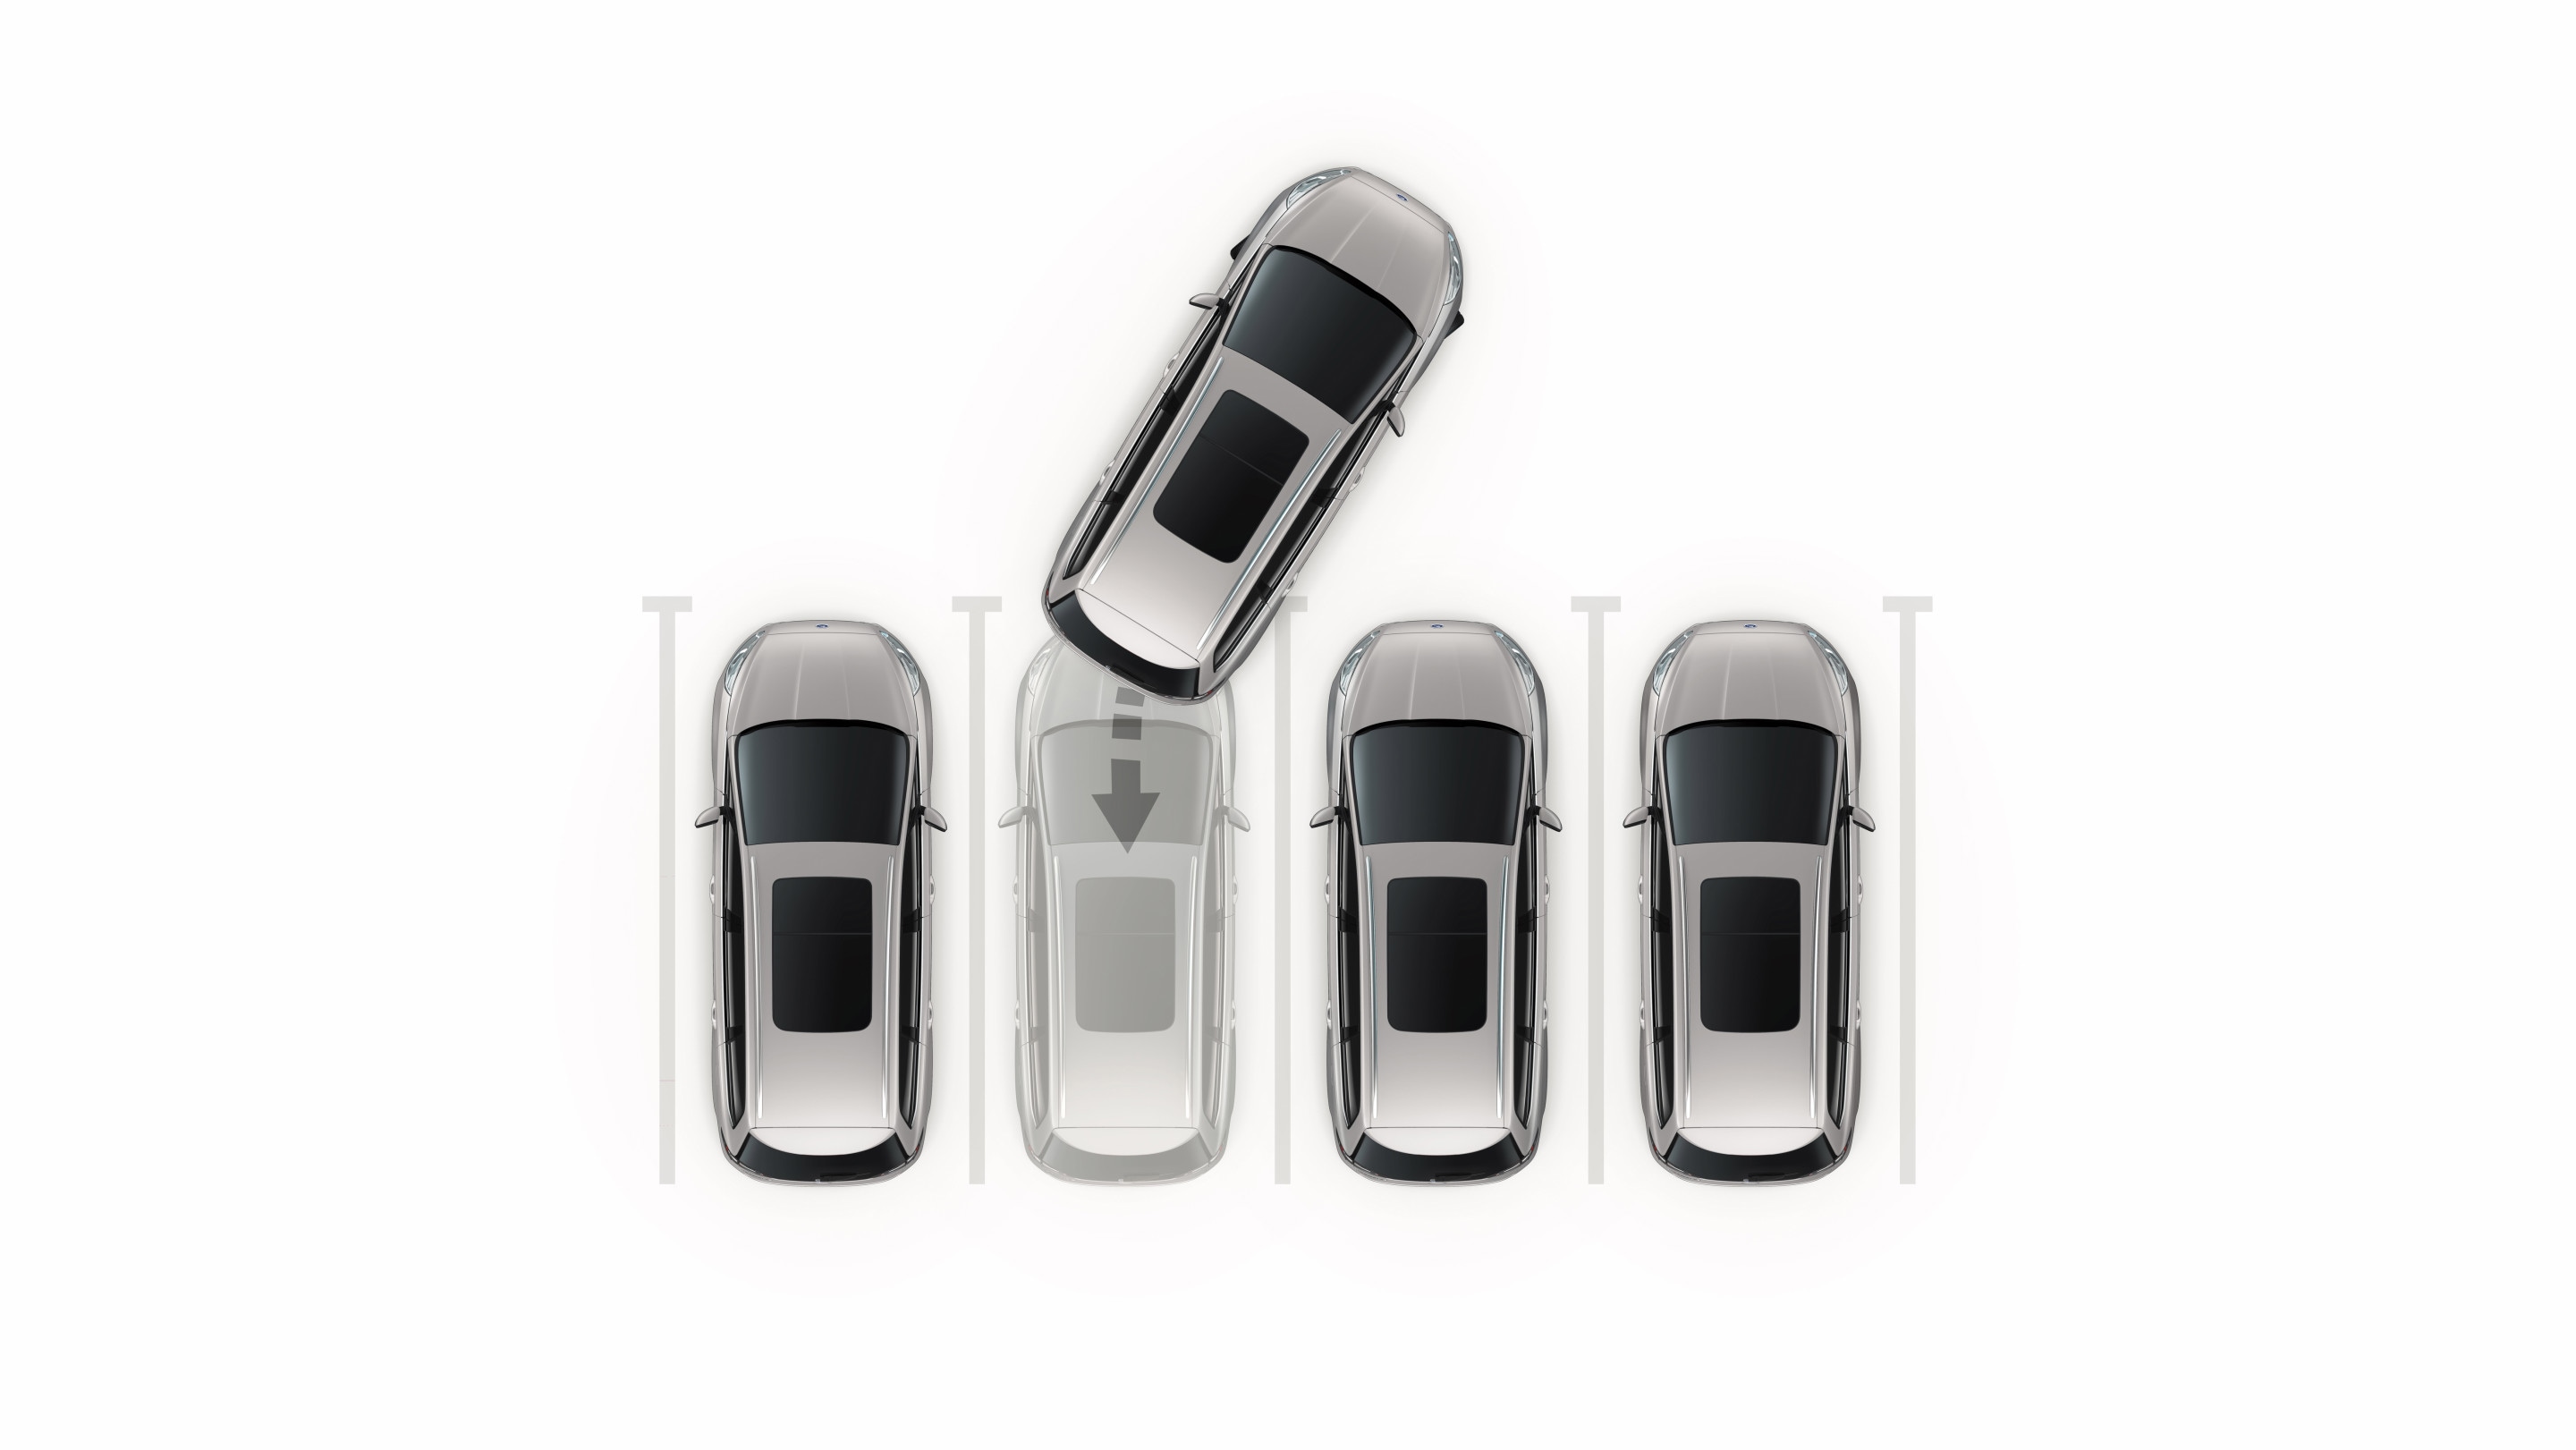 Ford Galaxy Hybrid. Visualisierung des Park-Assistenten mit Ein- und Ausparkfunktion